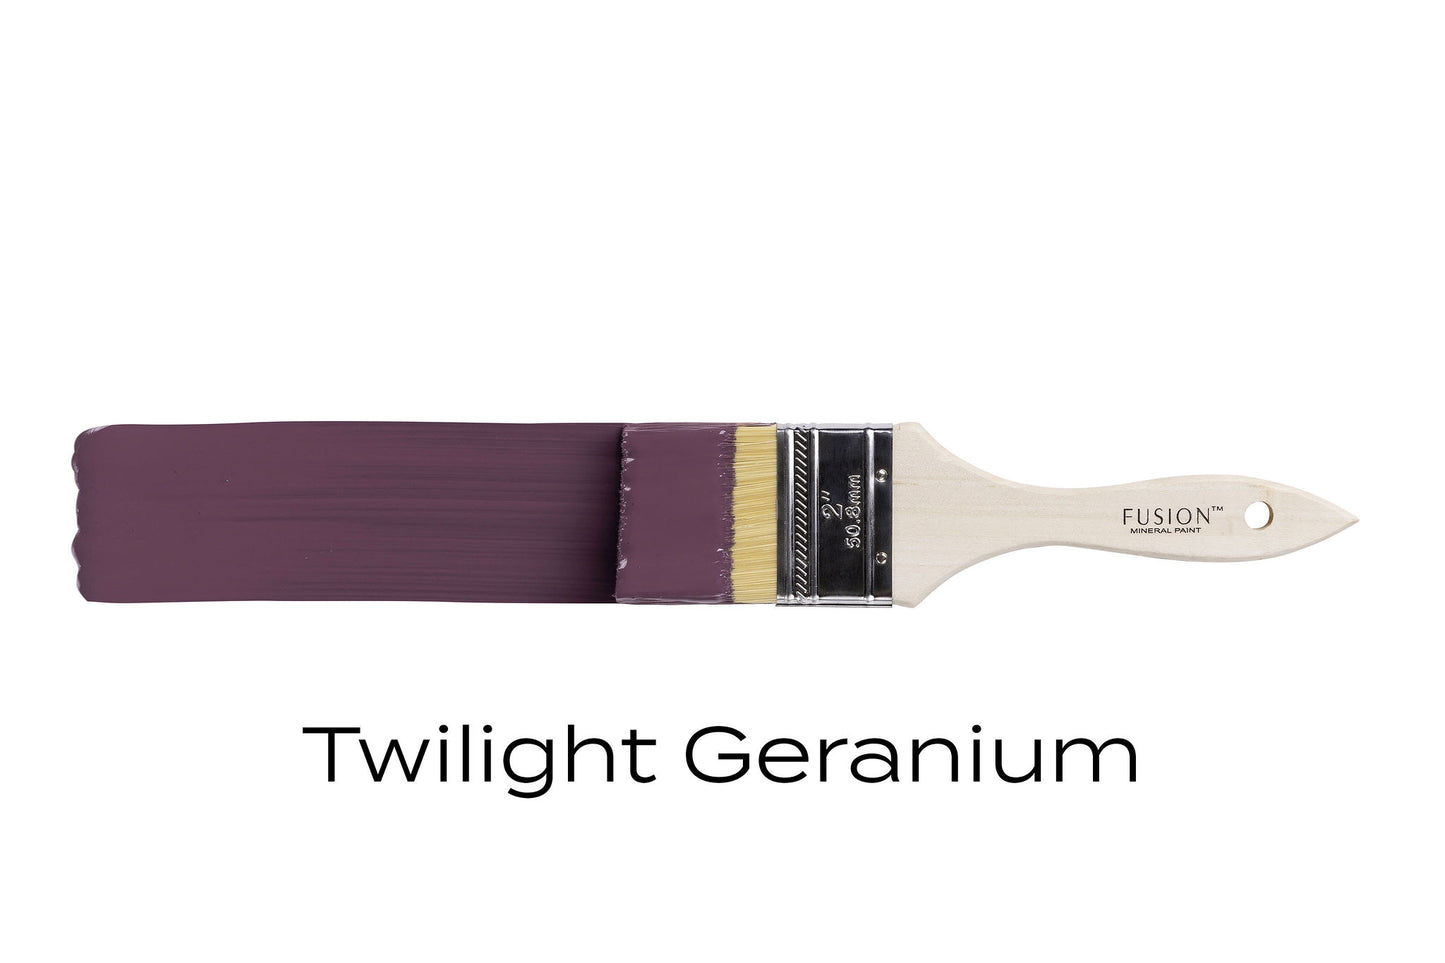 Twilight Geranium